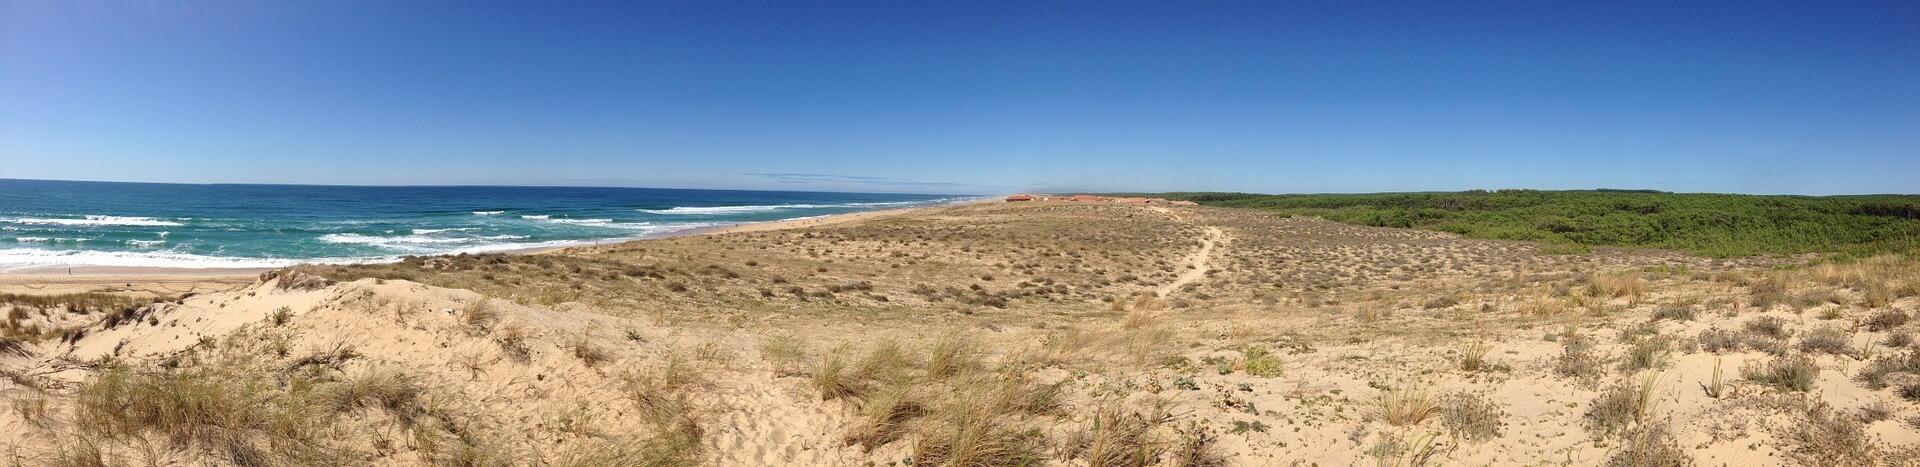 vue de la plage vers la mer-paysage de nouvelle aquitaine